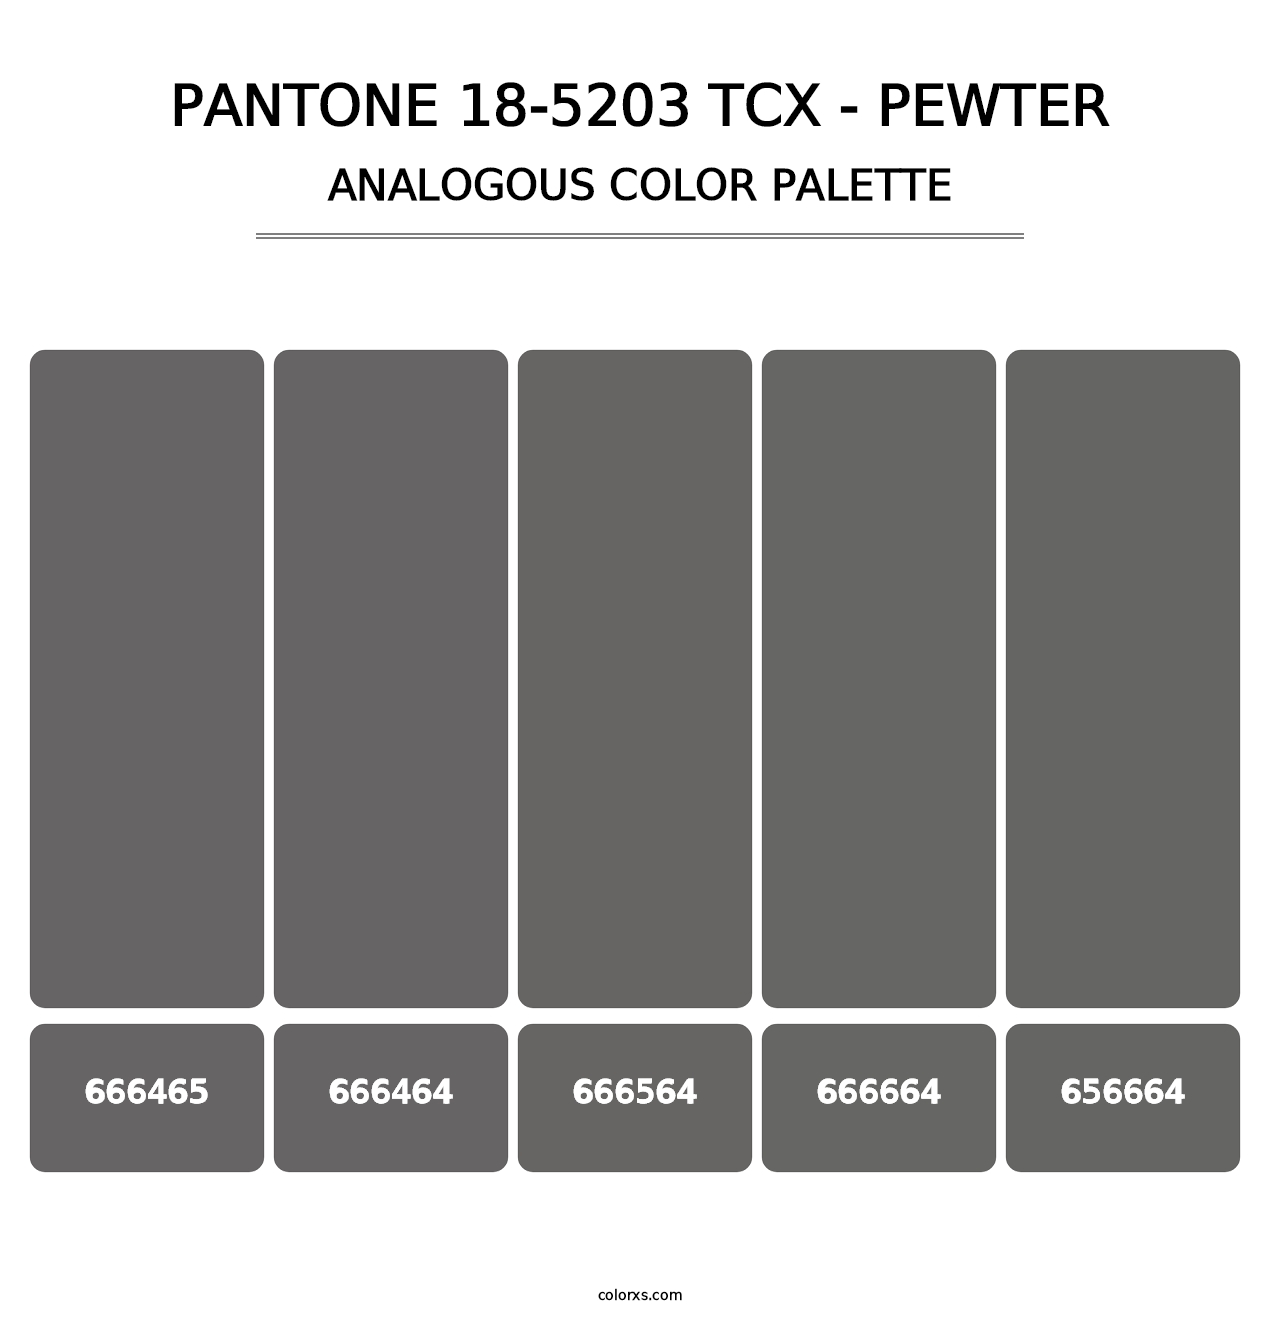 PANTONE 18-5203 TCX - Pewter - Analogous Color Palette